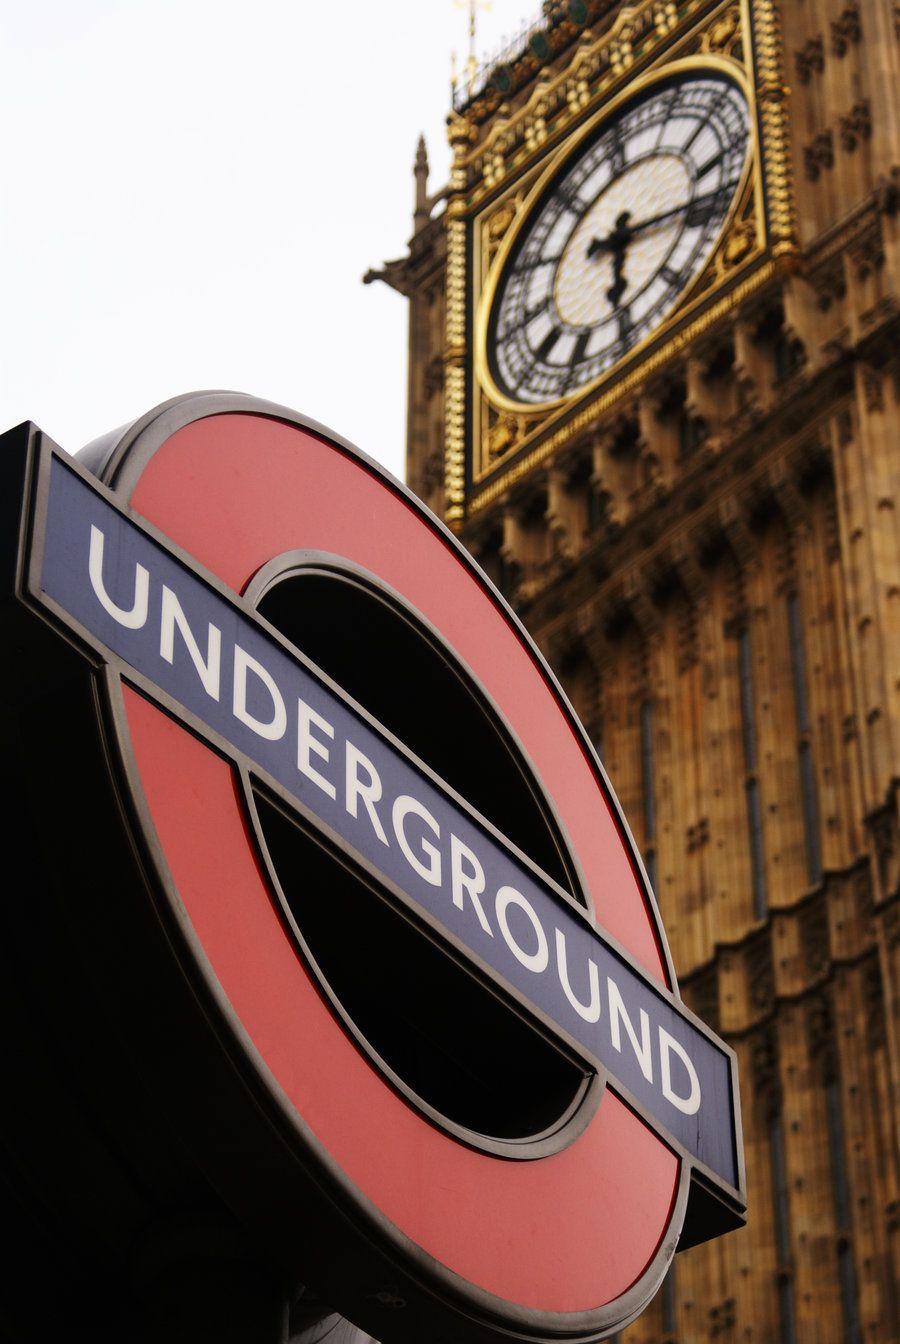 London Underground Wallpaper Free London Underground